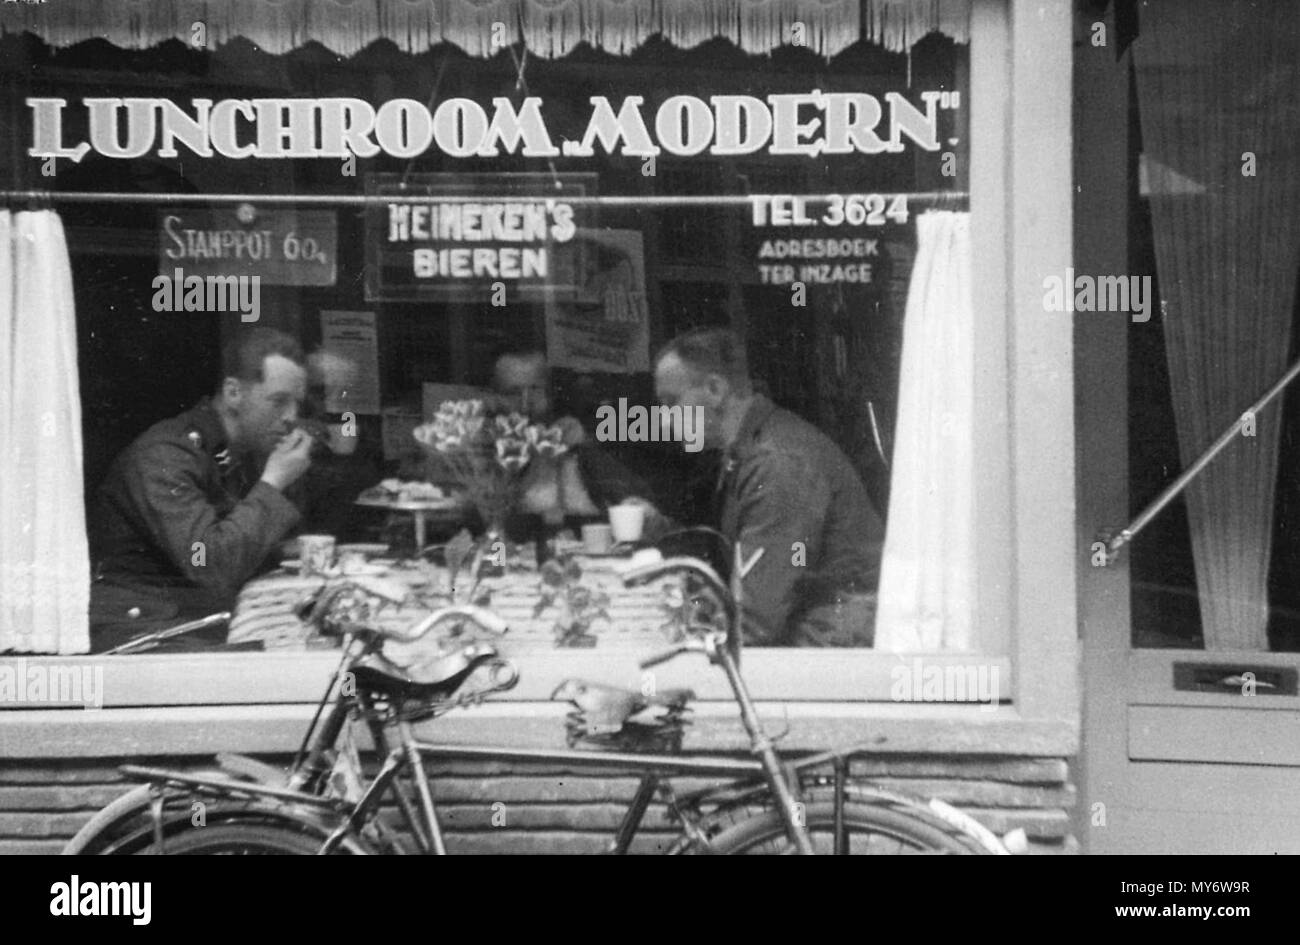 langestraat 96 lunchroom 1941. Stock Photo